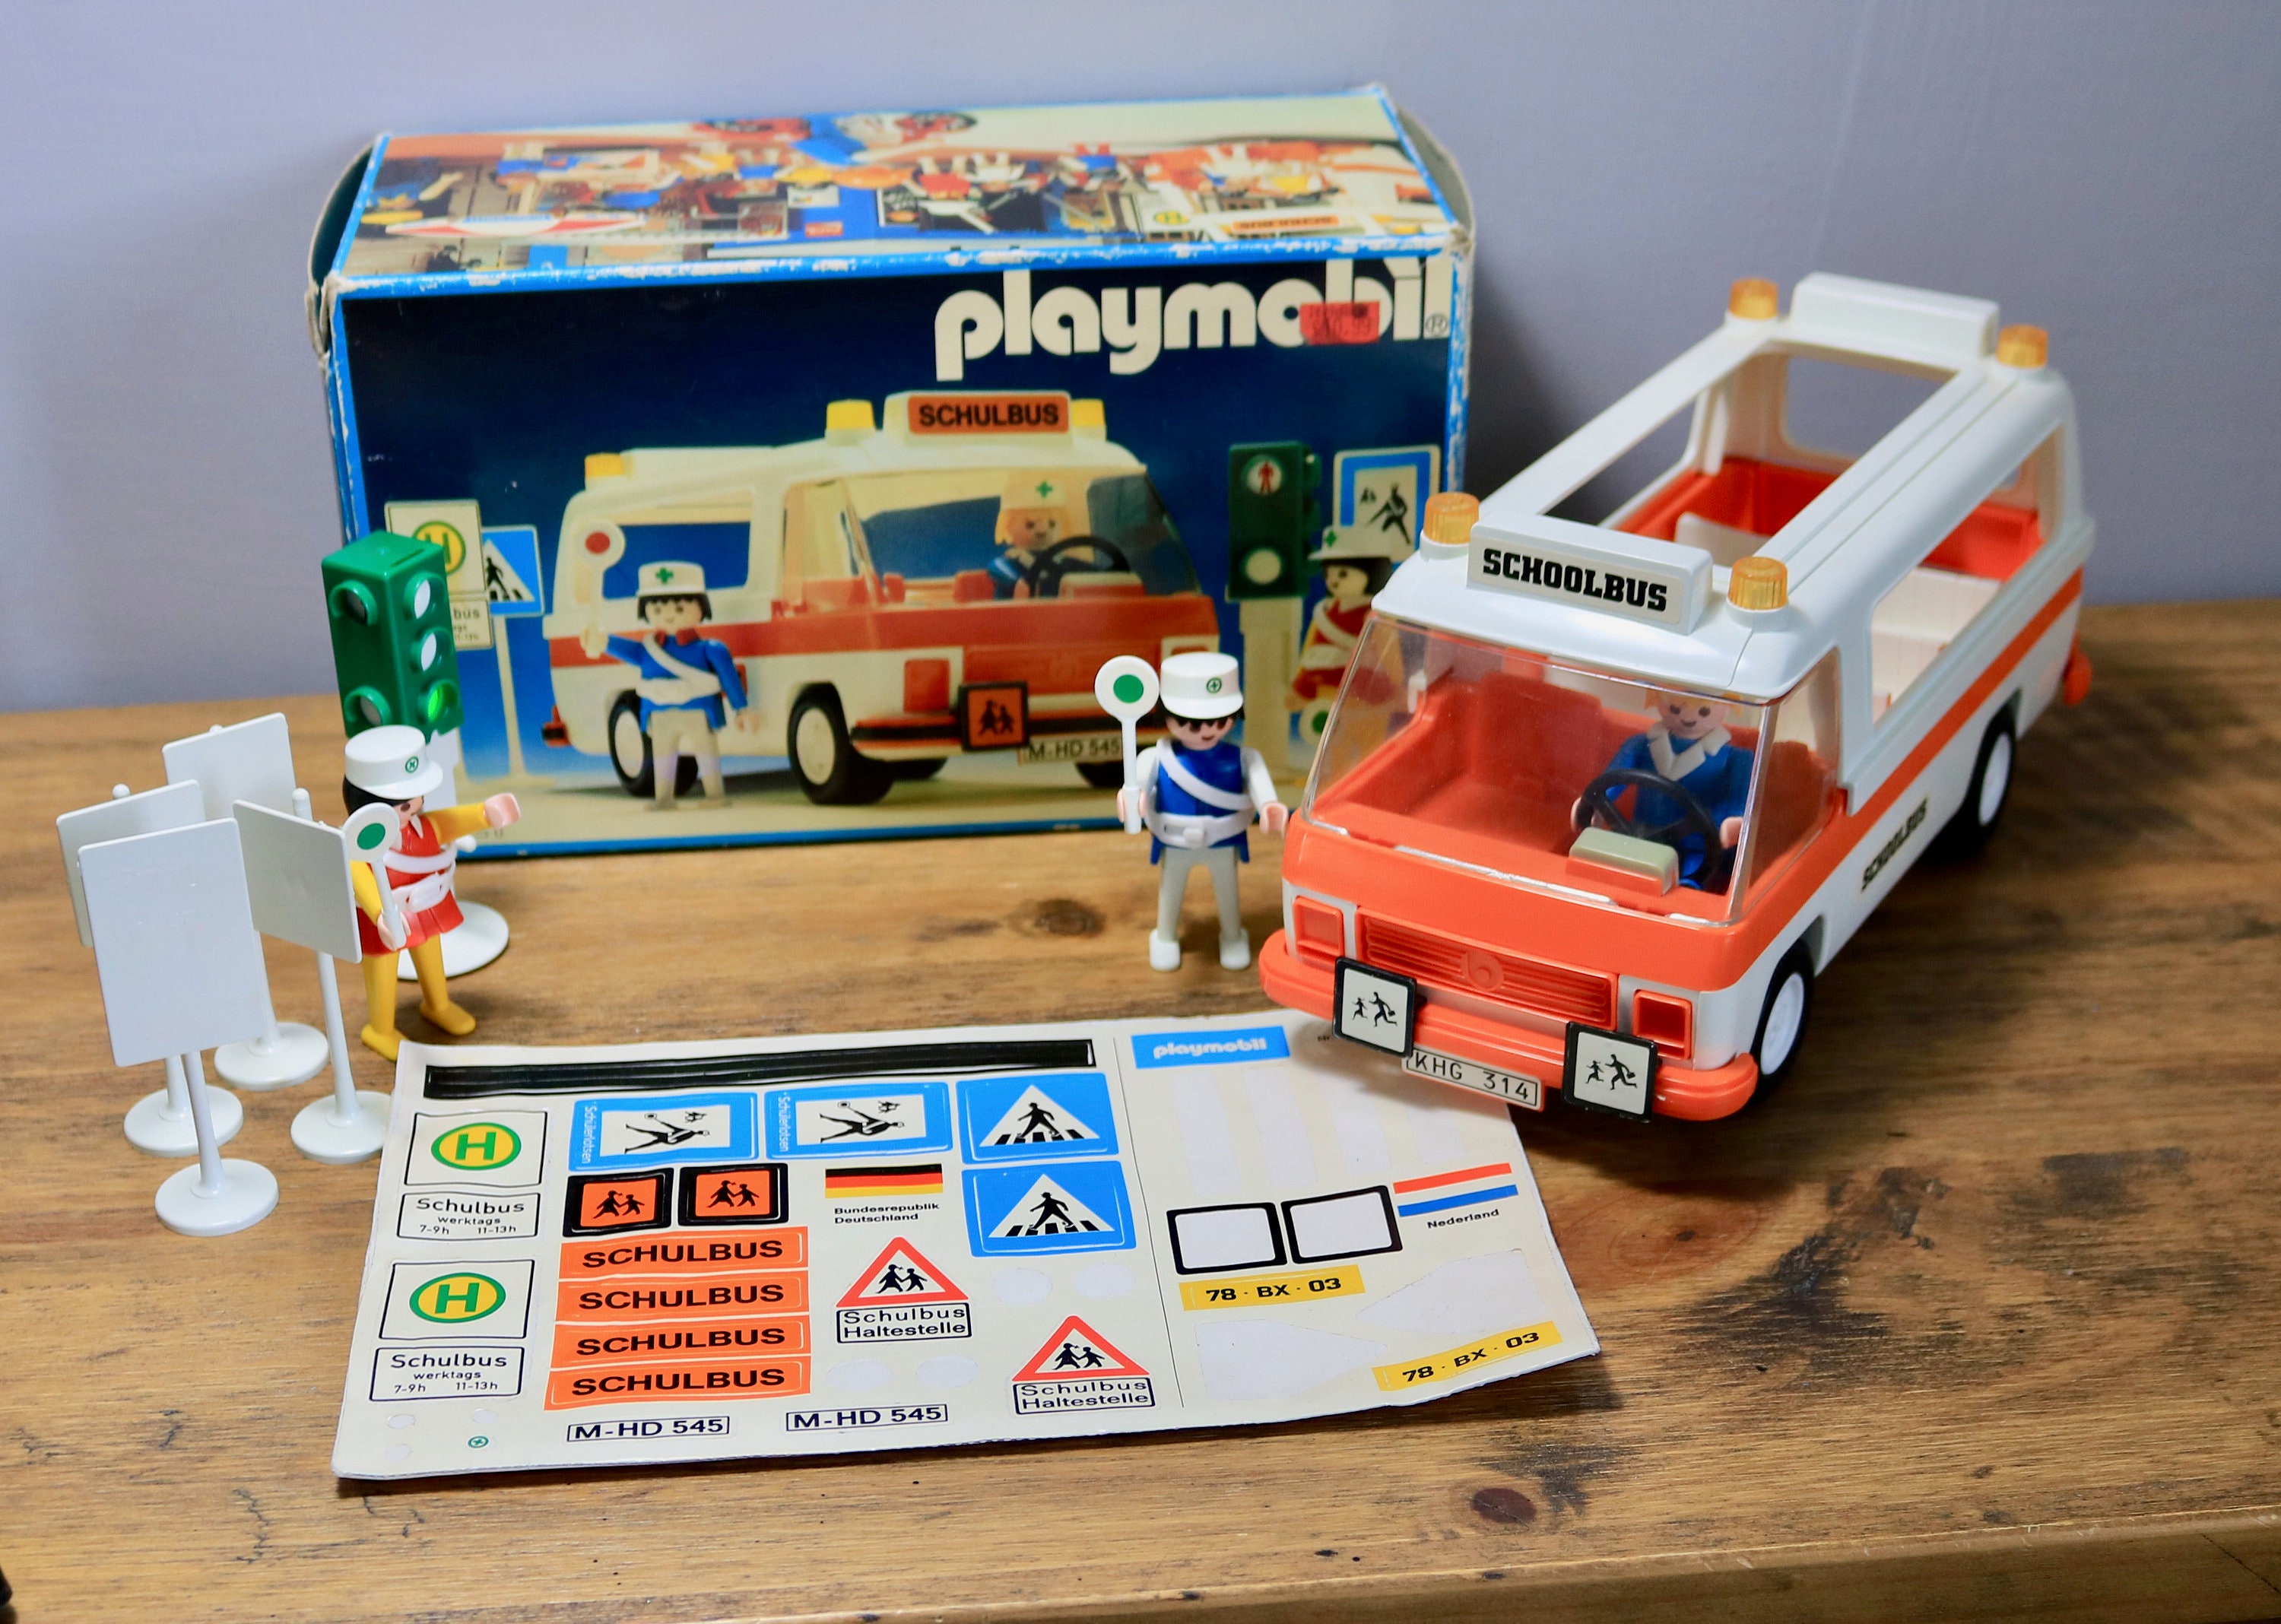 Ambulance Playmobil 3456 - jouets rétro jeux de société figurines et  objets vintage